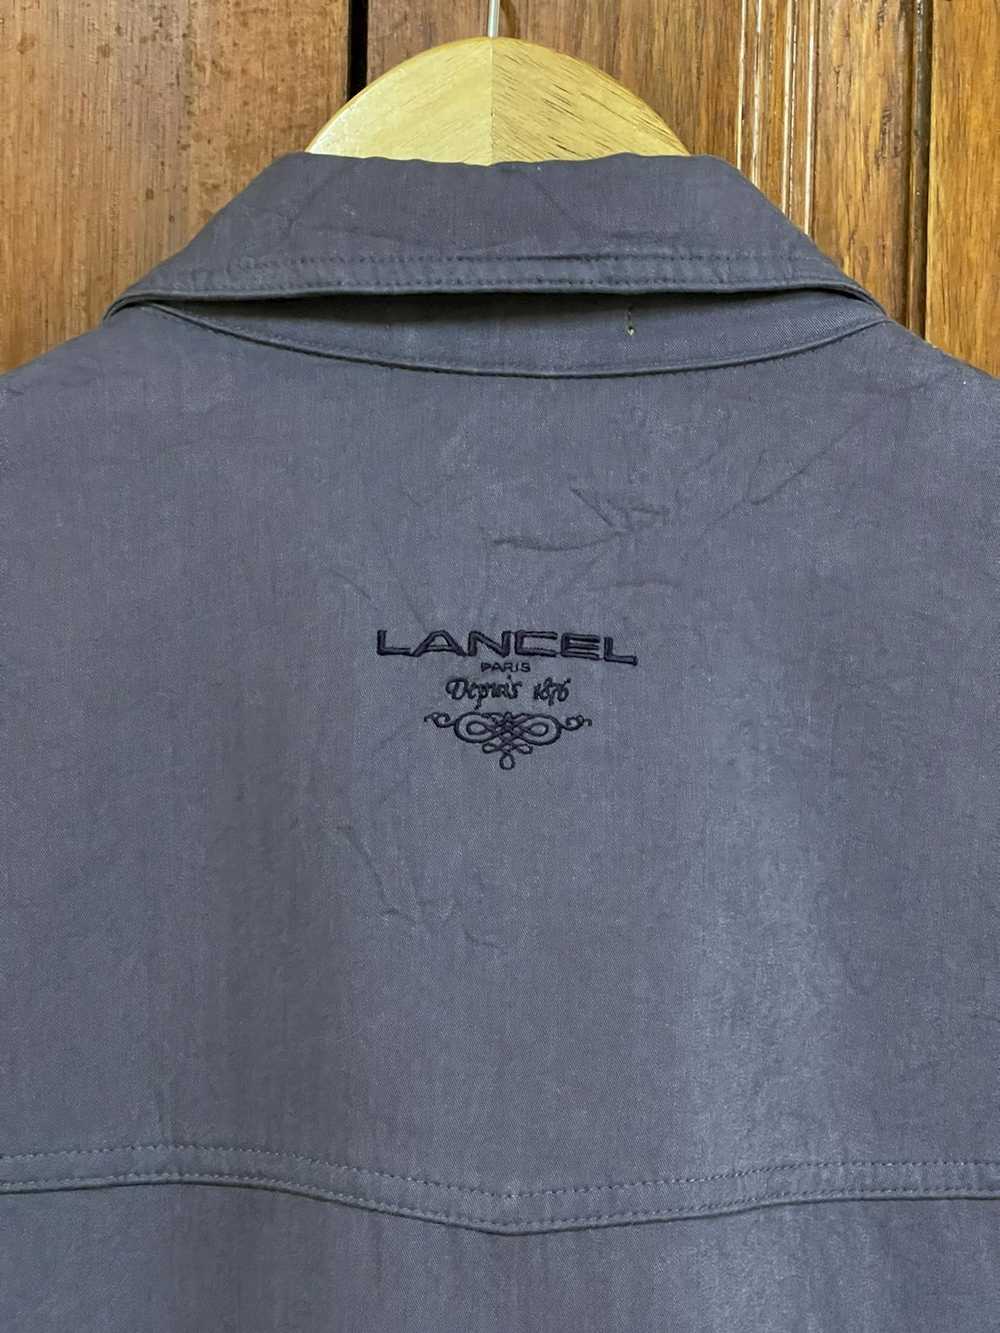 Designer × Lancel Lancel Paris Jacket - image 6